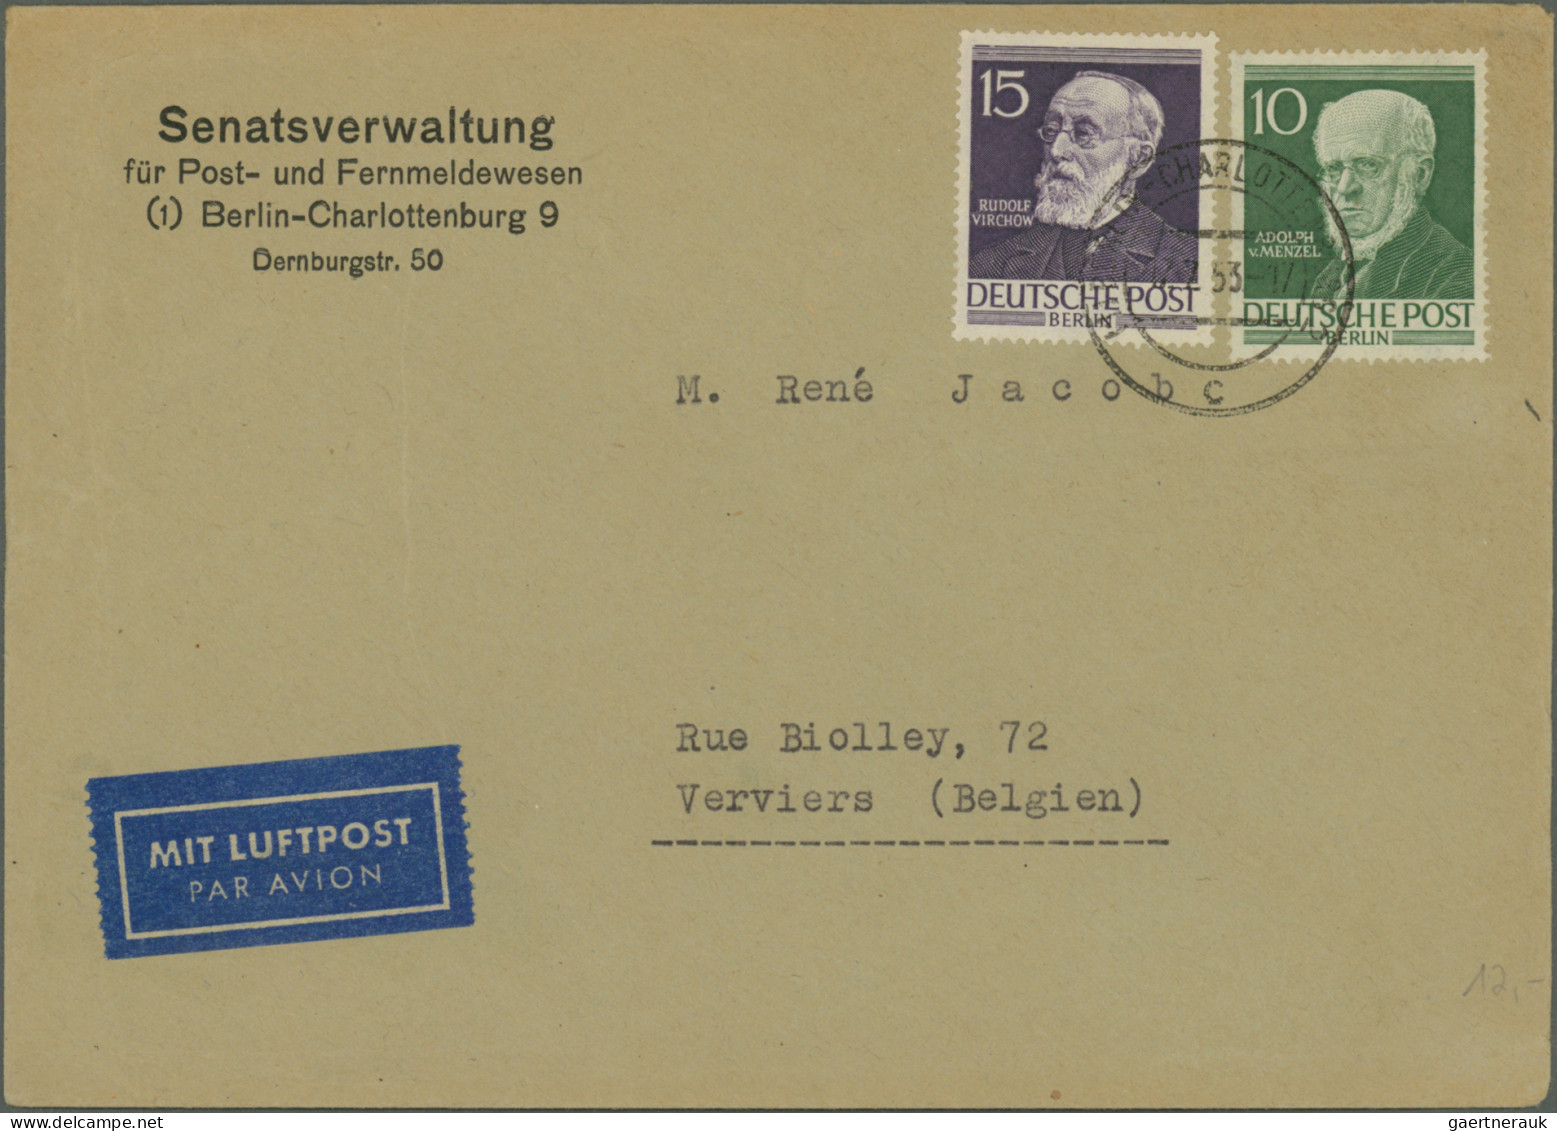 Berlin: 1948/1959, nette Partie von ca. 73 Briefen und Karten mit nur mittleren